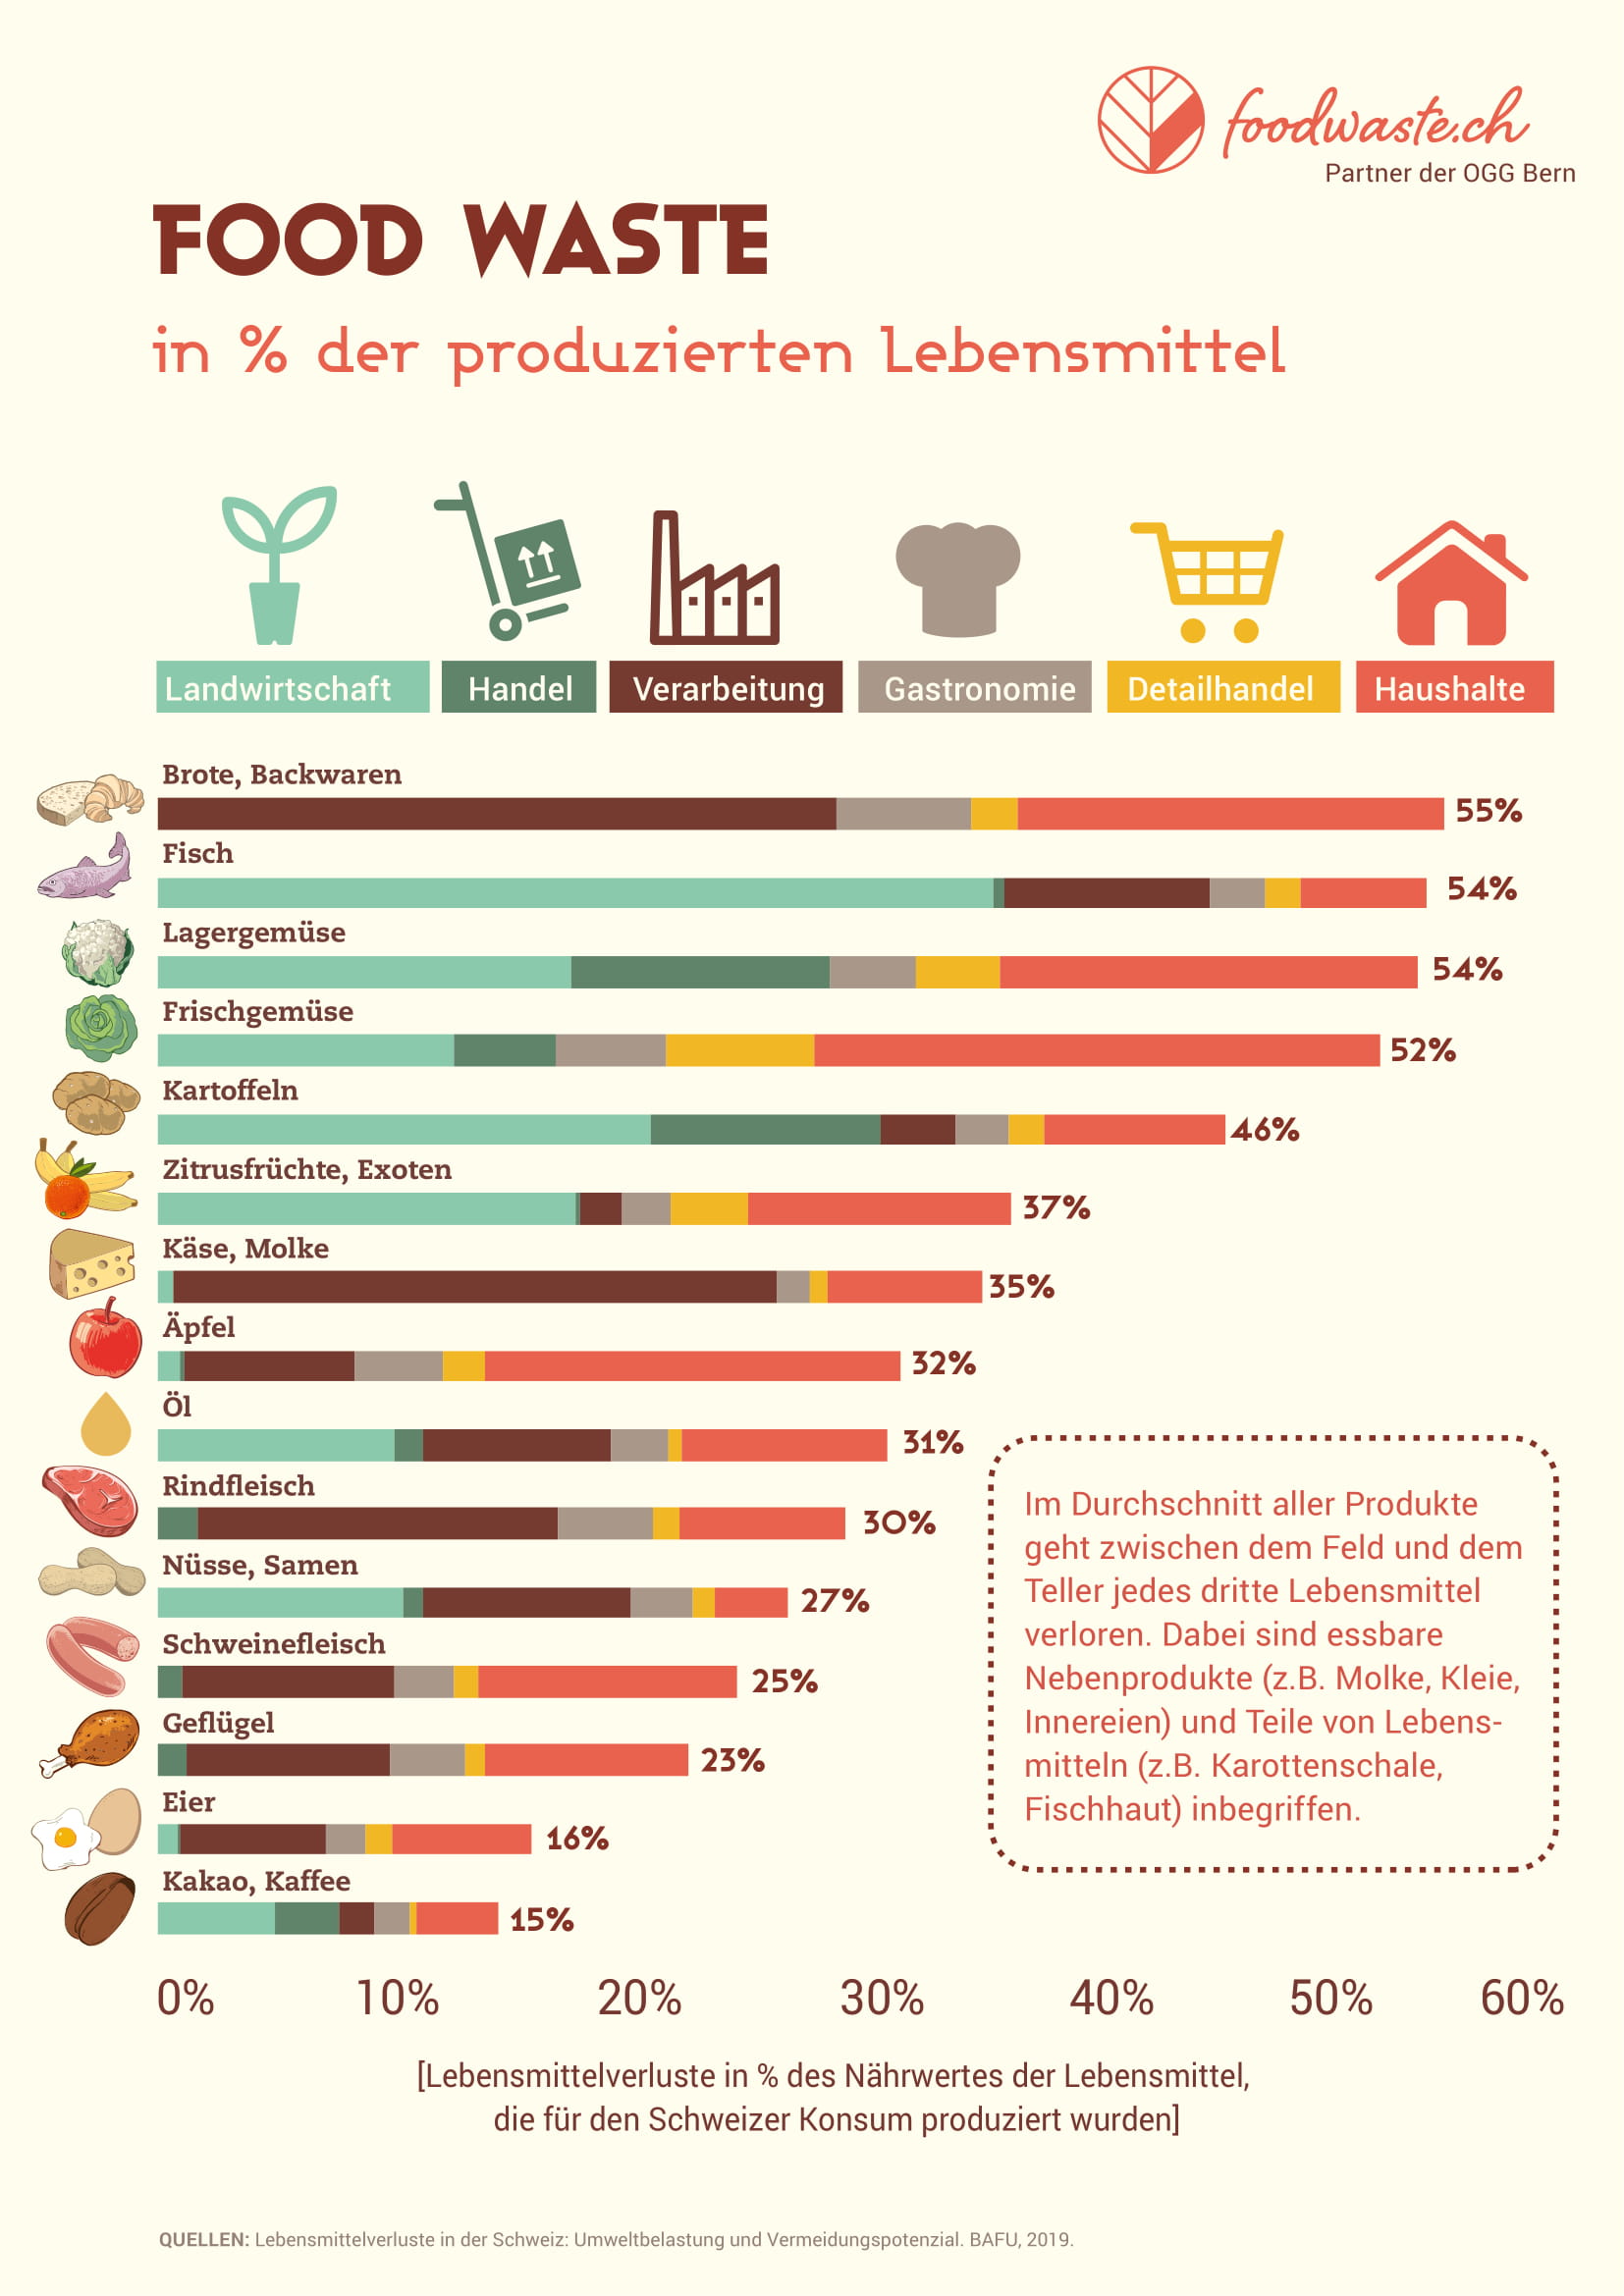 Was ist Food Waste? - foodwaste.ch